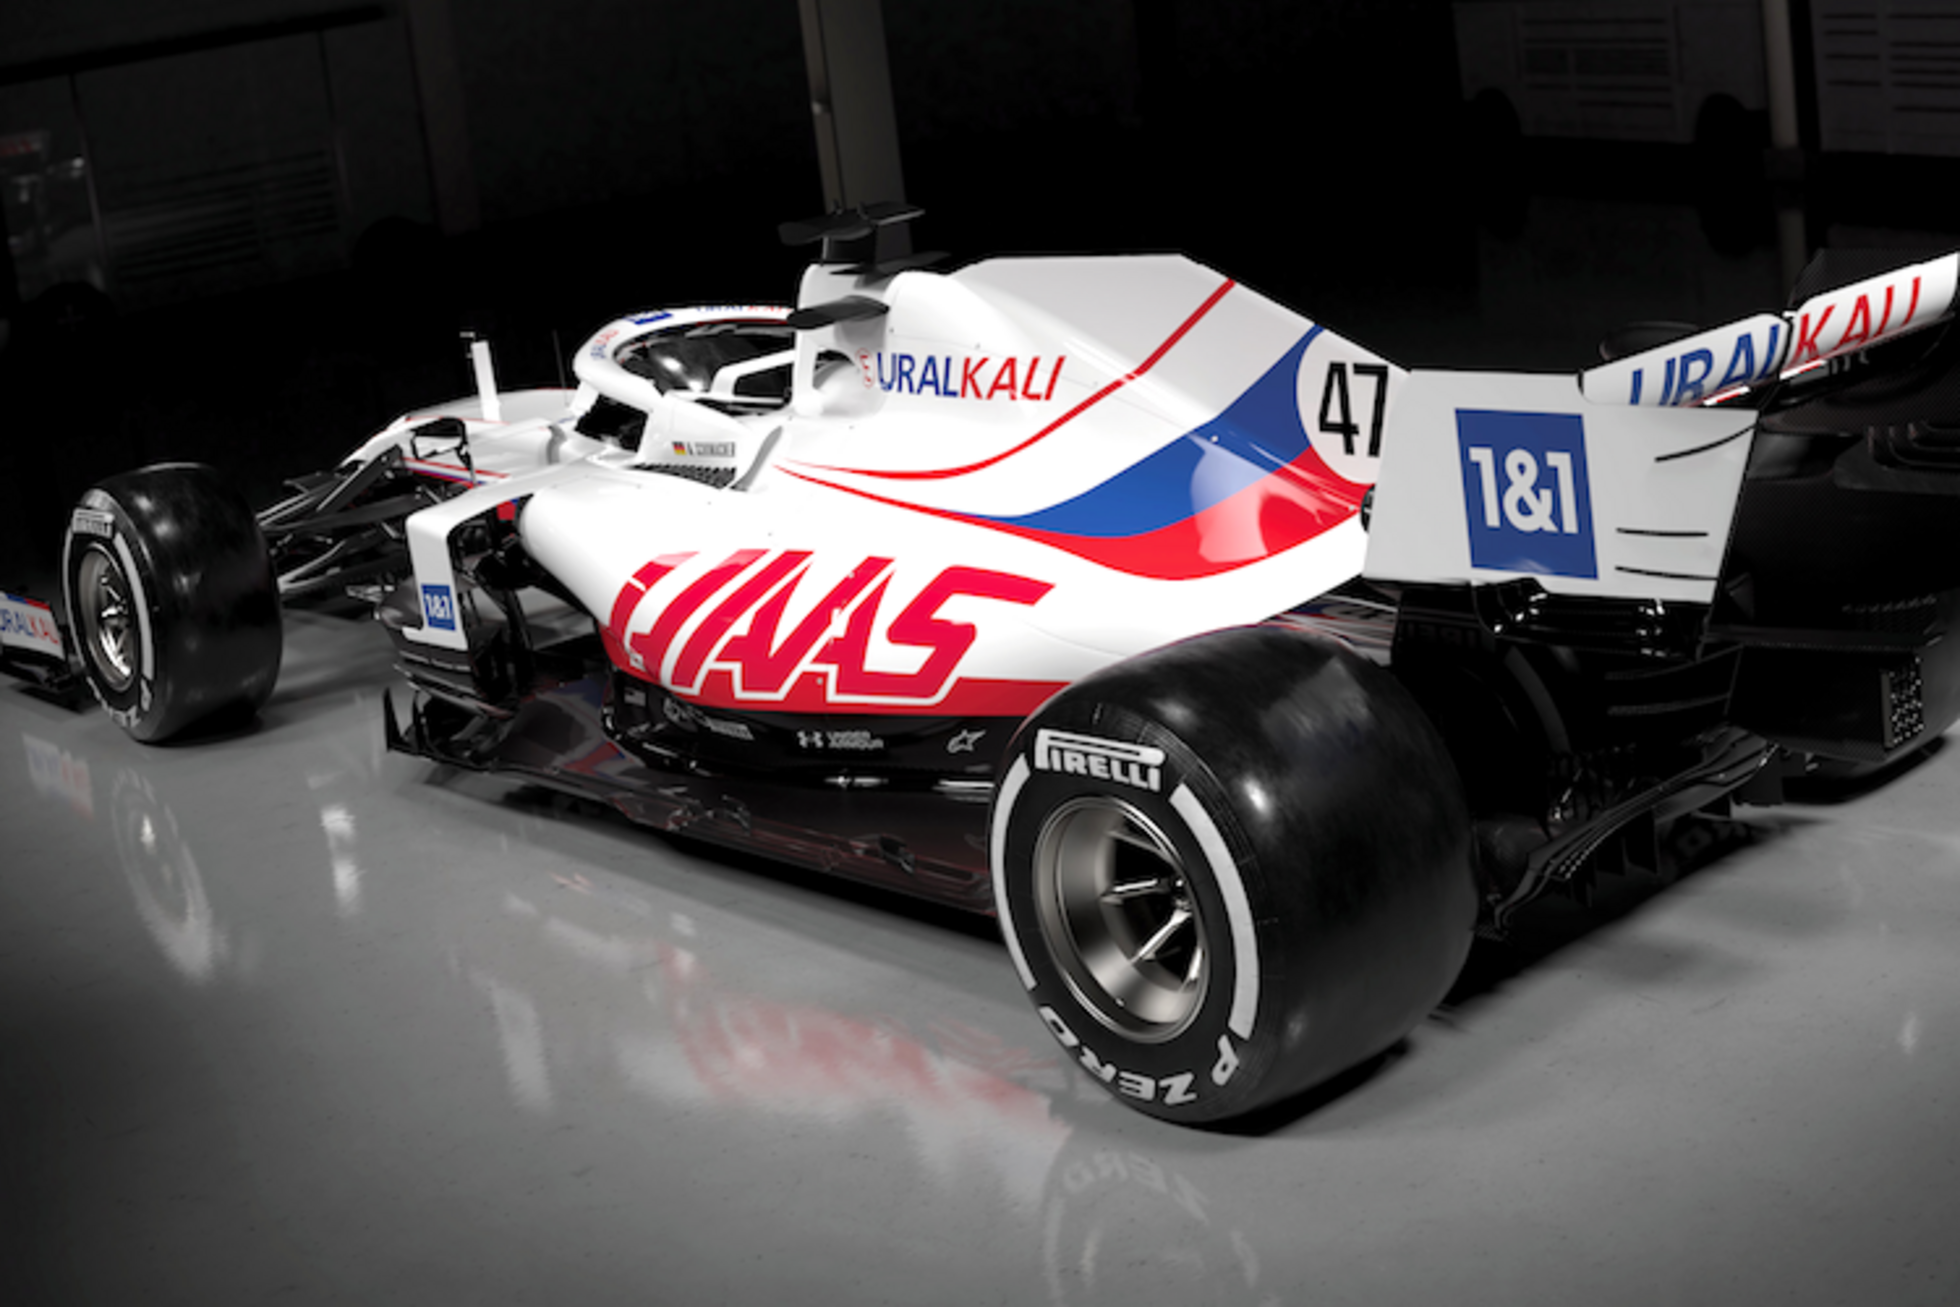 Ф 1 2021. Болид Haas 2021. Haas f1 2021 ливрея. Haas f1 2021 livery. F1 Haas 2020.